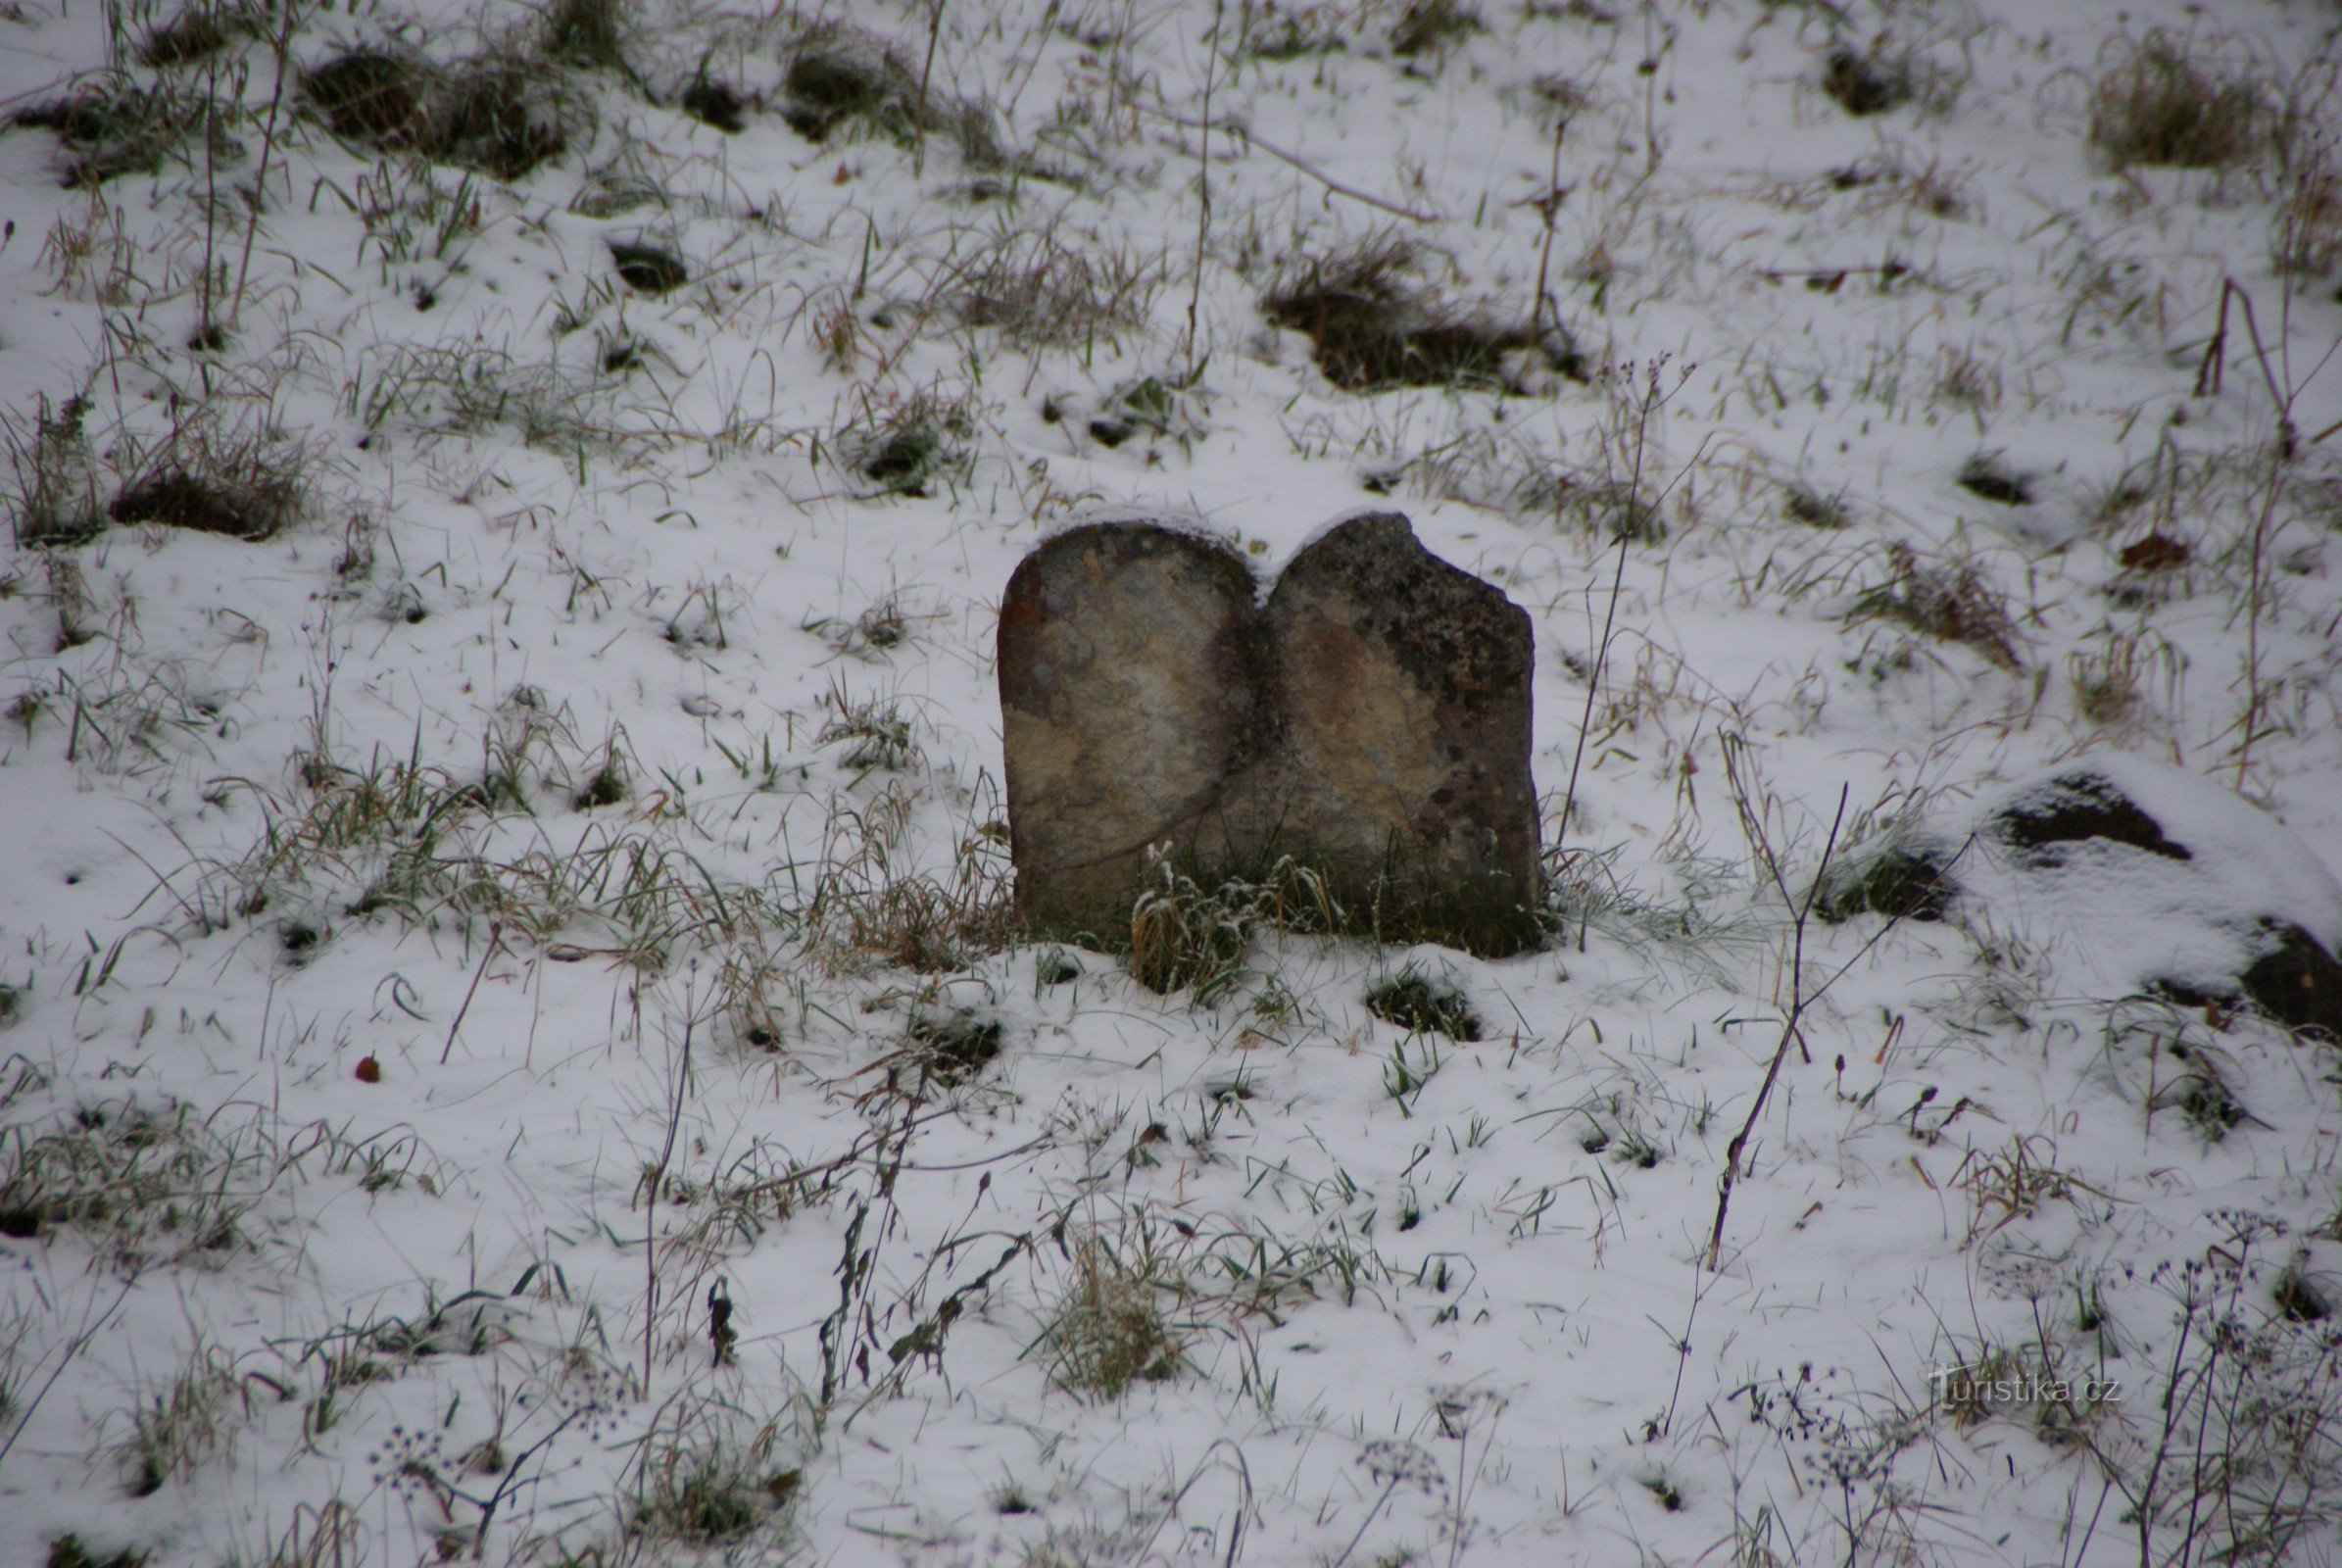 Boskovice – browsing through the winter Jewish cemetery